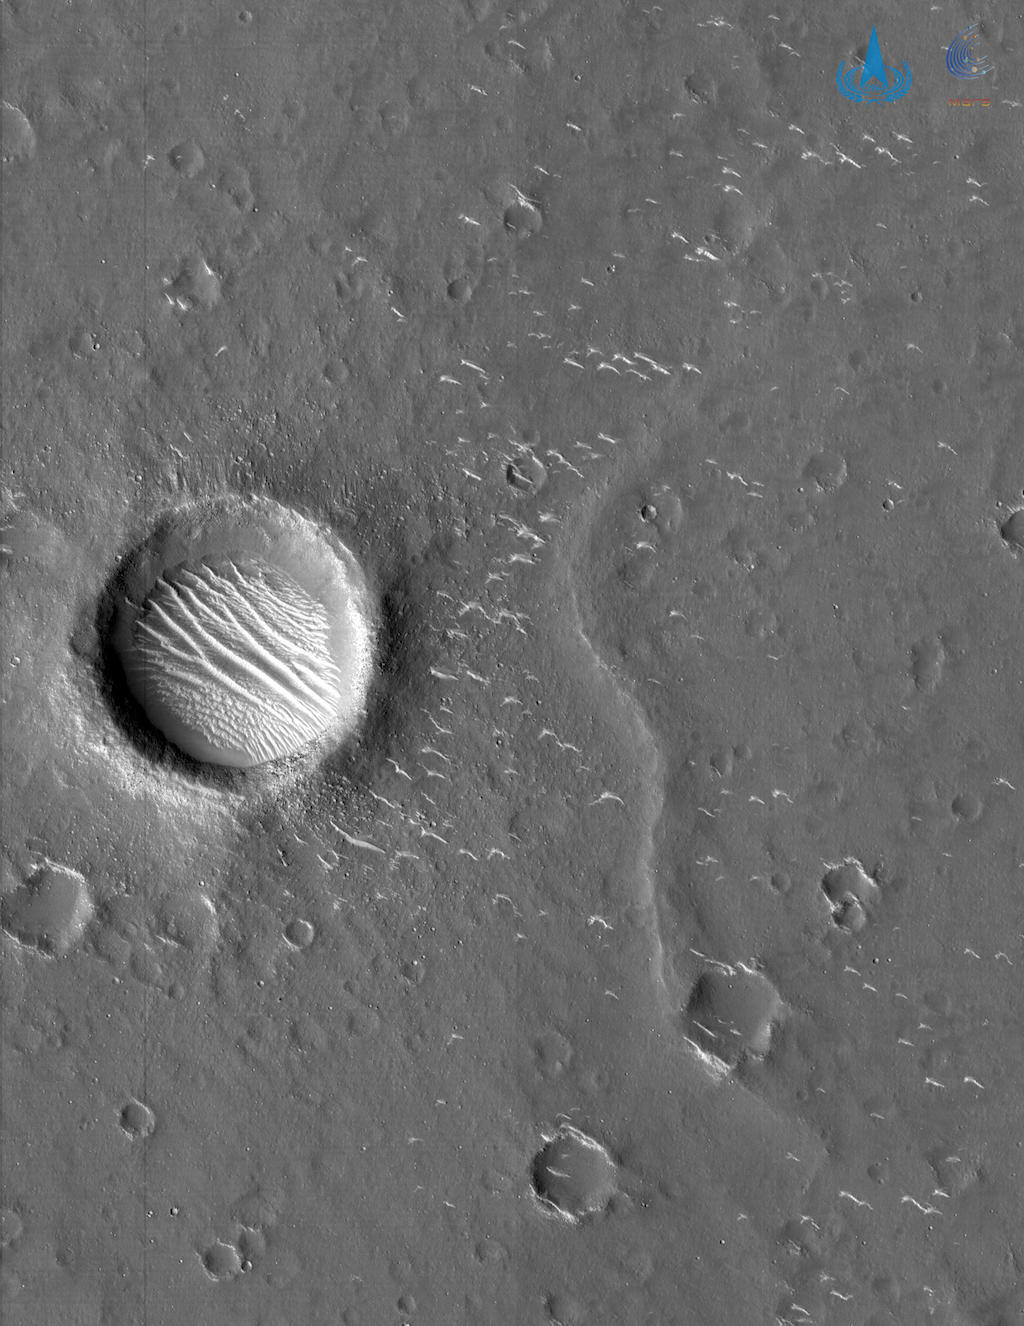  天问一号在距离火星表面330公里处拍摄的火星表面。 